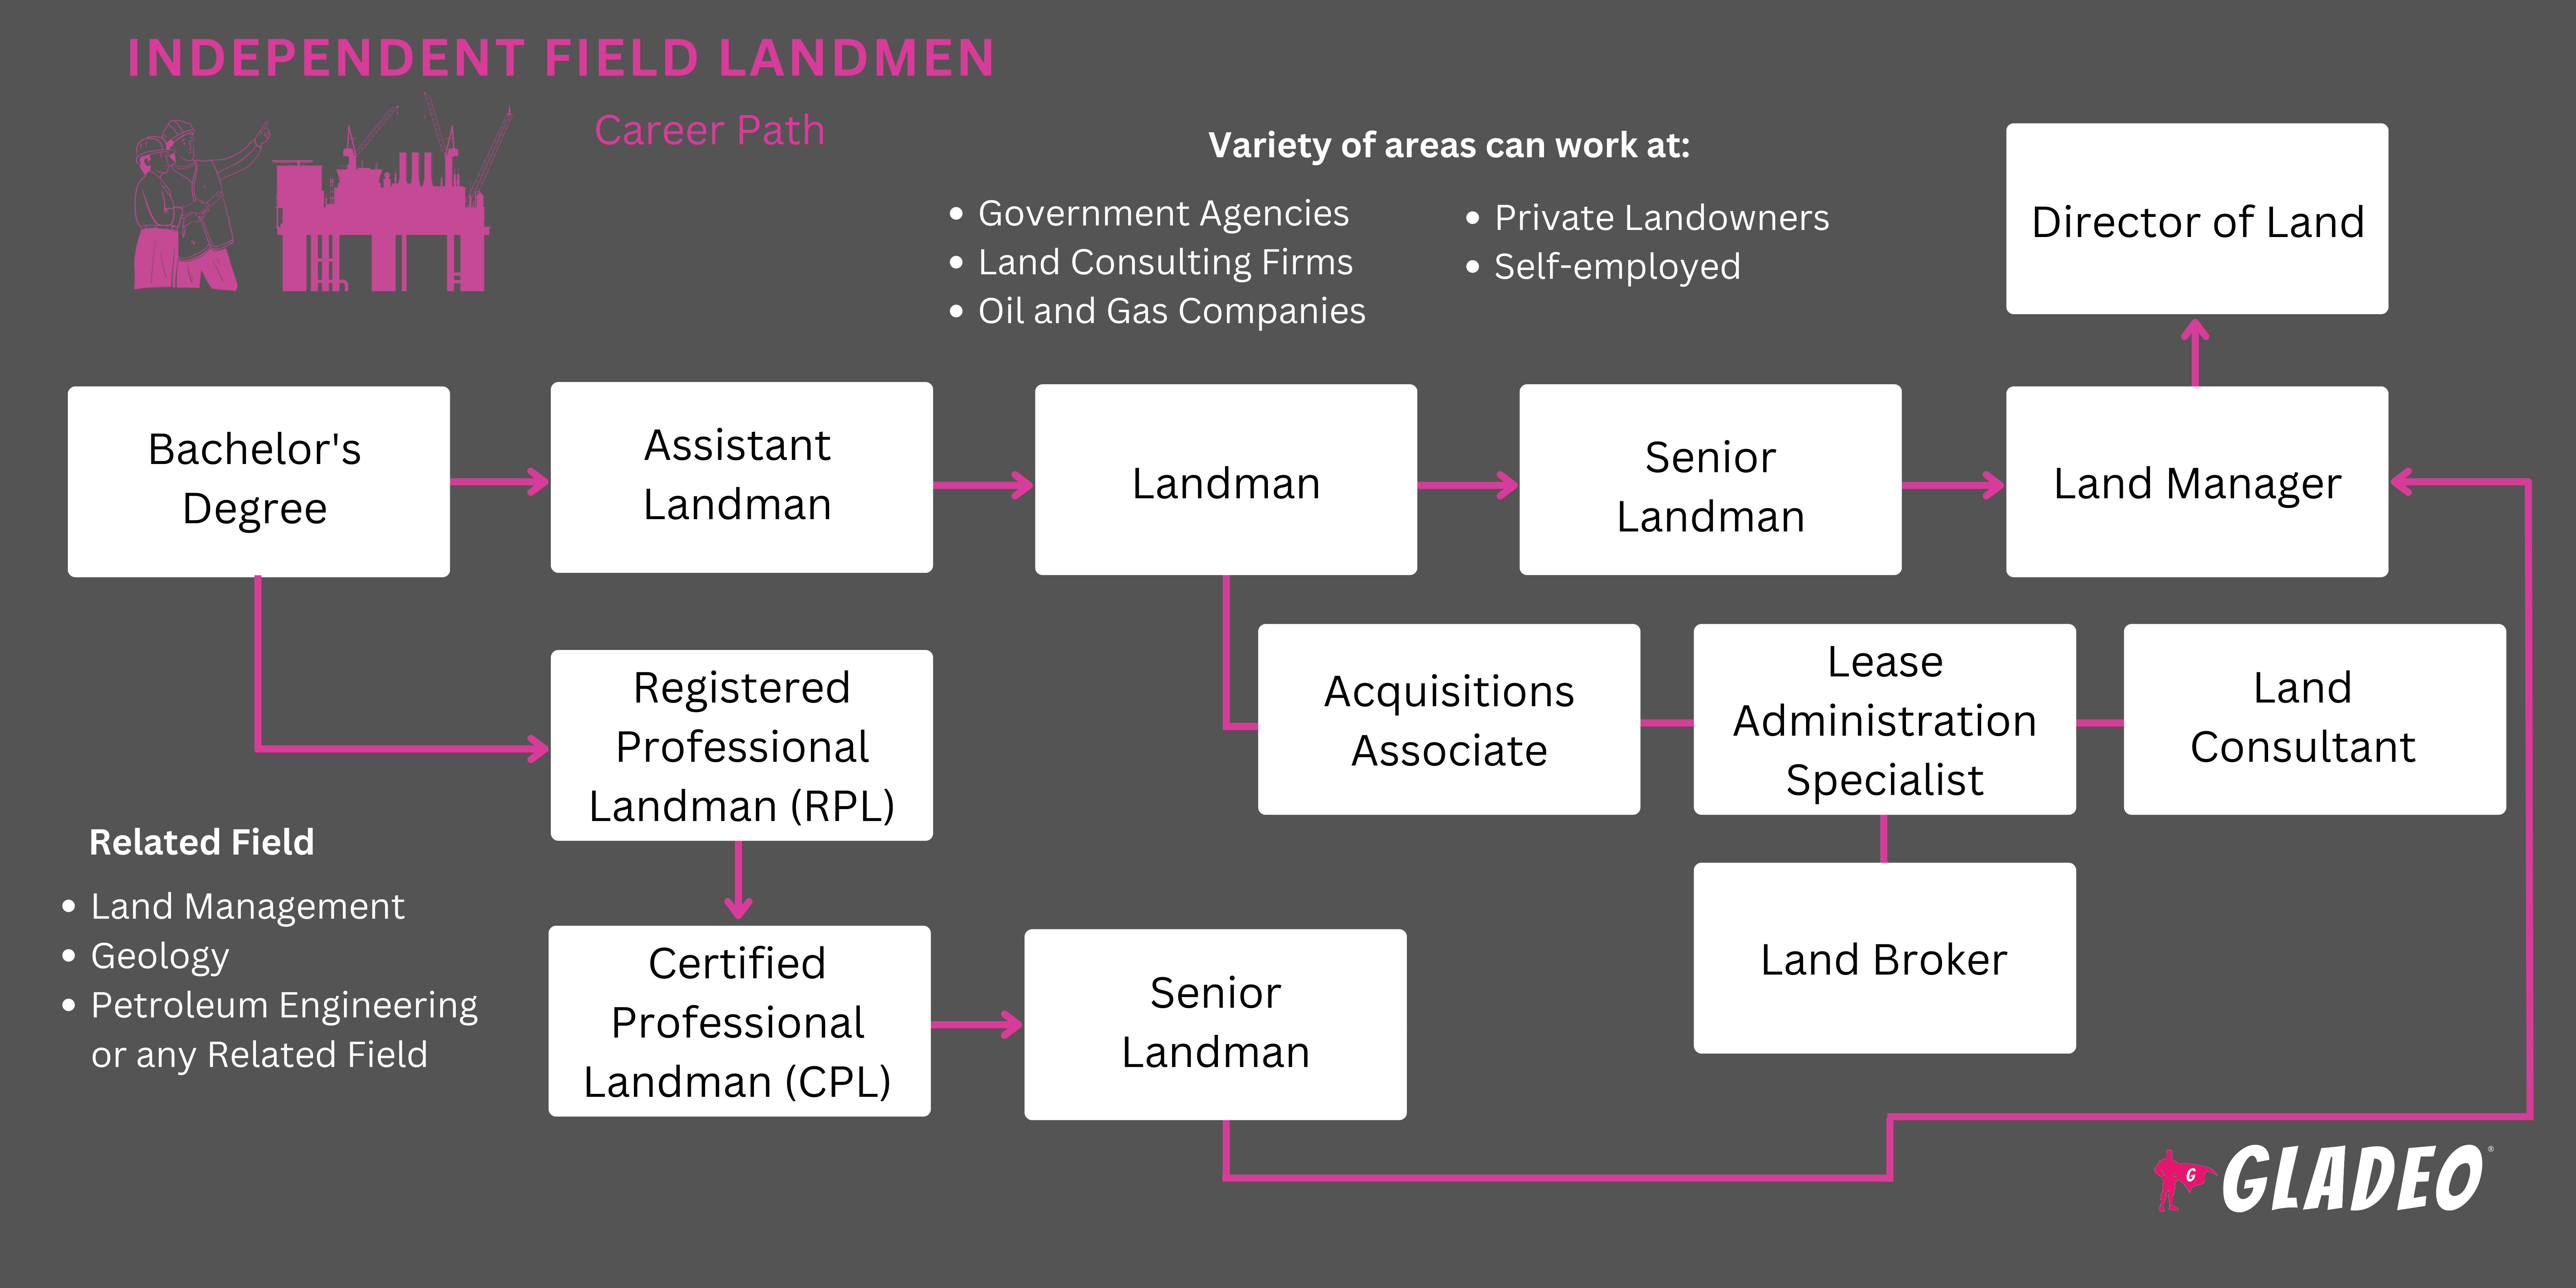 Independent Field Landmen